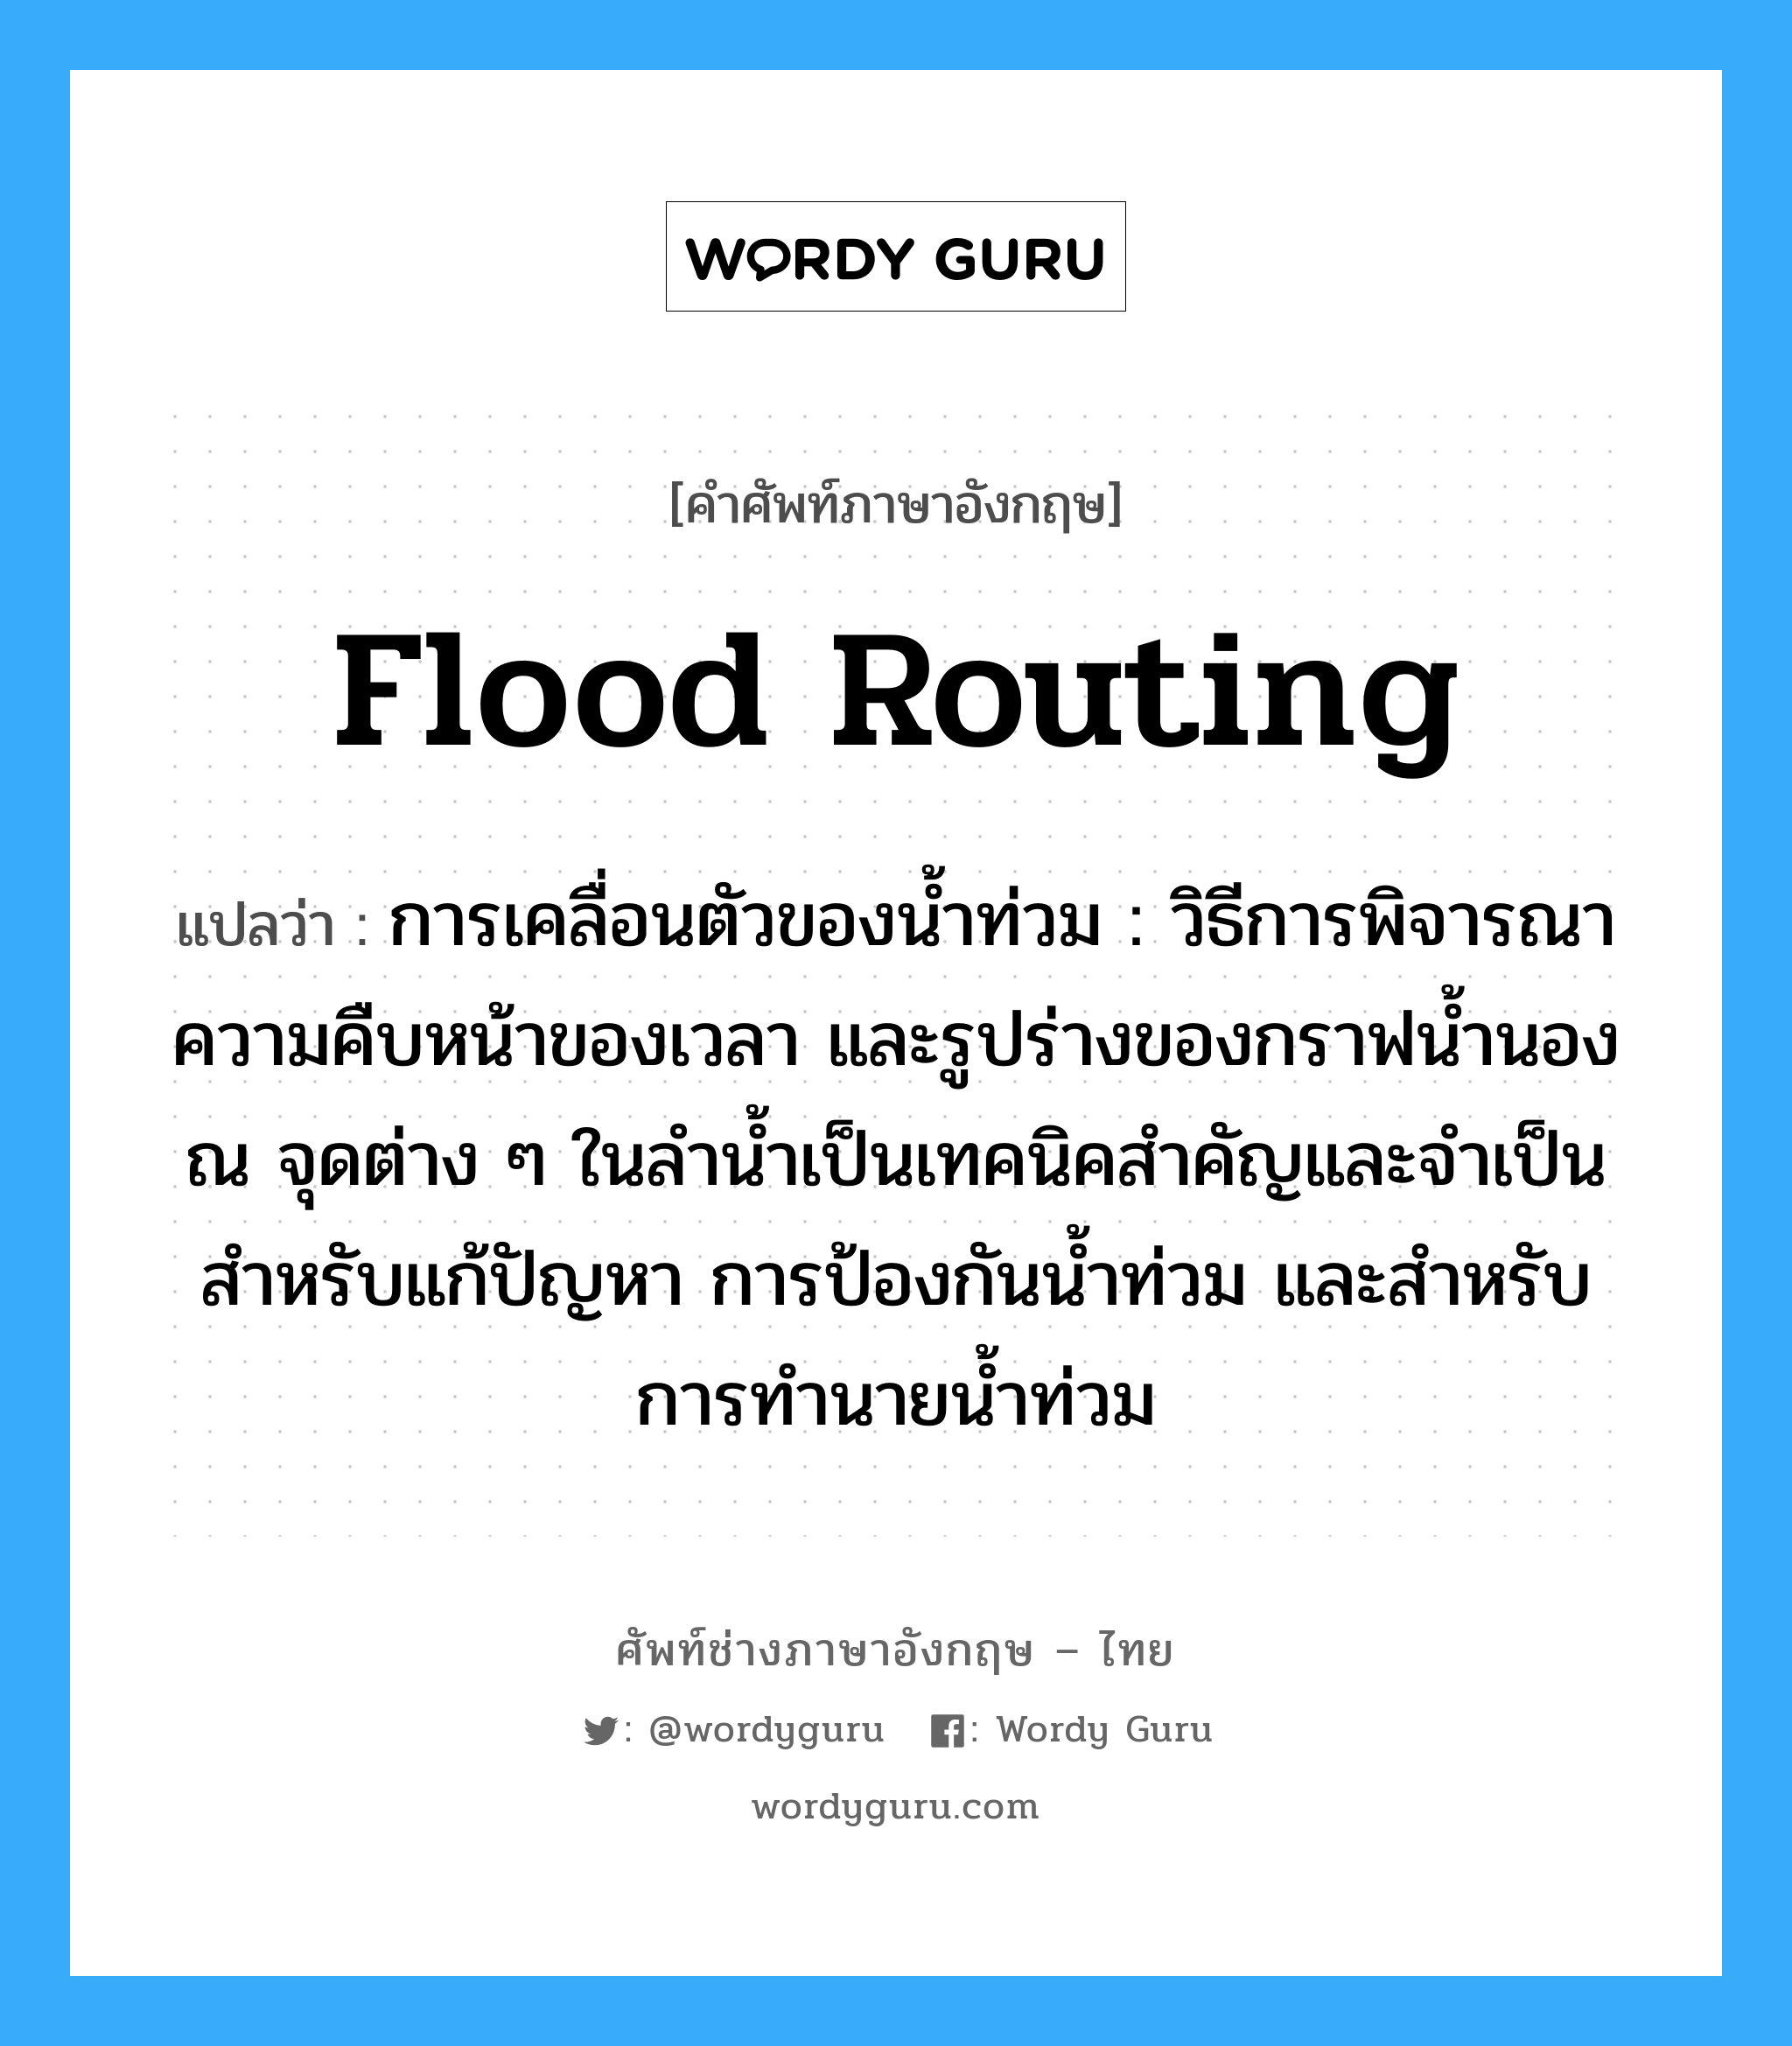 flood routing แปลว่า?, คำศัพท์ช่างภาษาอังกฤษ - ไทย flood routing คำศัพท์ภาษาอังกฤษ flood routing แปลว่า การเคลื่อนตัวของน้ำท่วม : วิธีการพิจารณาความคืบหน้าของเวลา และรูปร่างของกราฟน้ำนองณ จุดต่าง ๆ ในลำน้ำเป็นเทคนิคสำคัญและจำเป็นสำหรับแก้ปัญหา การป้องกันน้ำท่วม และสำหรับการทำนายน้ำท่วม